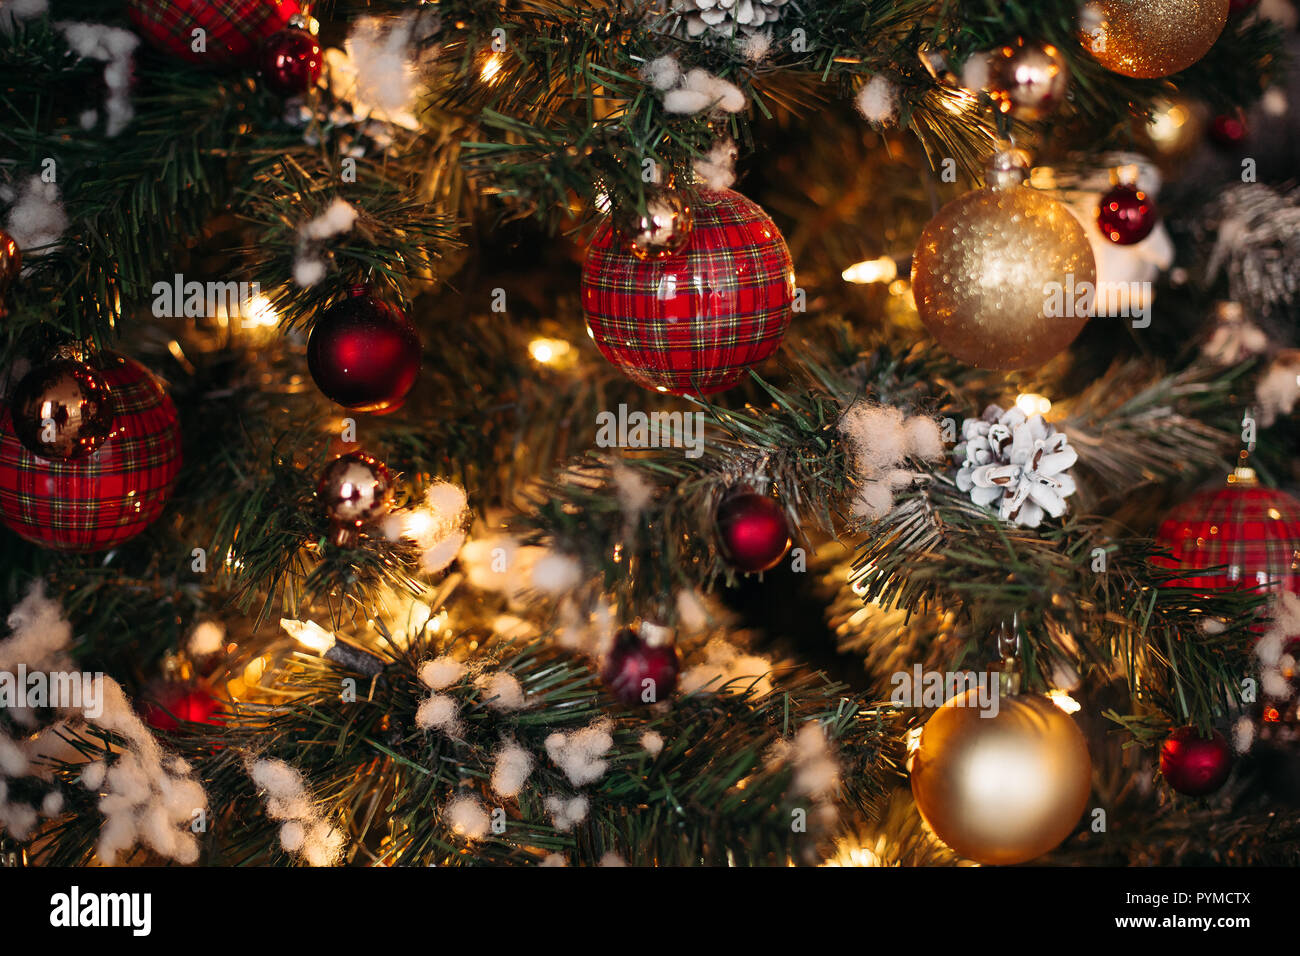 Albero Di Natale Rosso E Oro Con Fiocchi.Close Up Di Natale Decorato Con Pino Rosso E Oro Fiocchi A Scacchi E Nastri Foto Stock Alamy